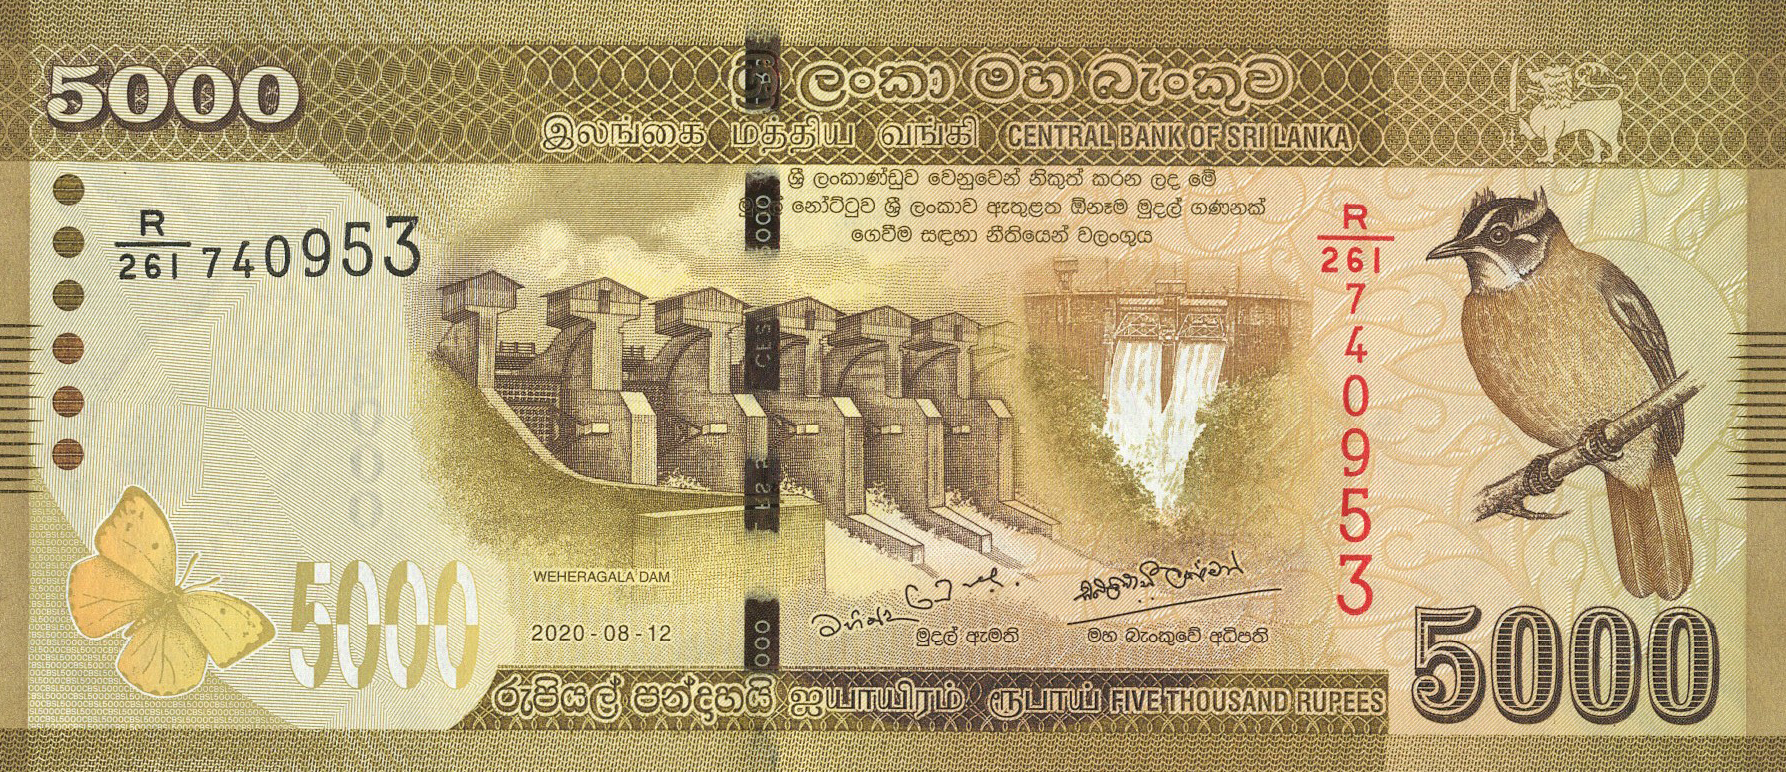 Sri lanka new